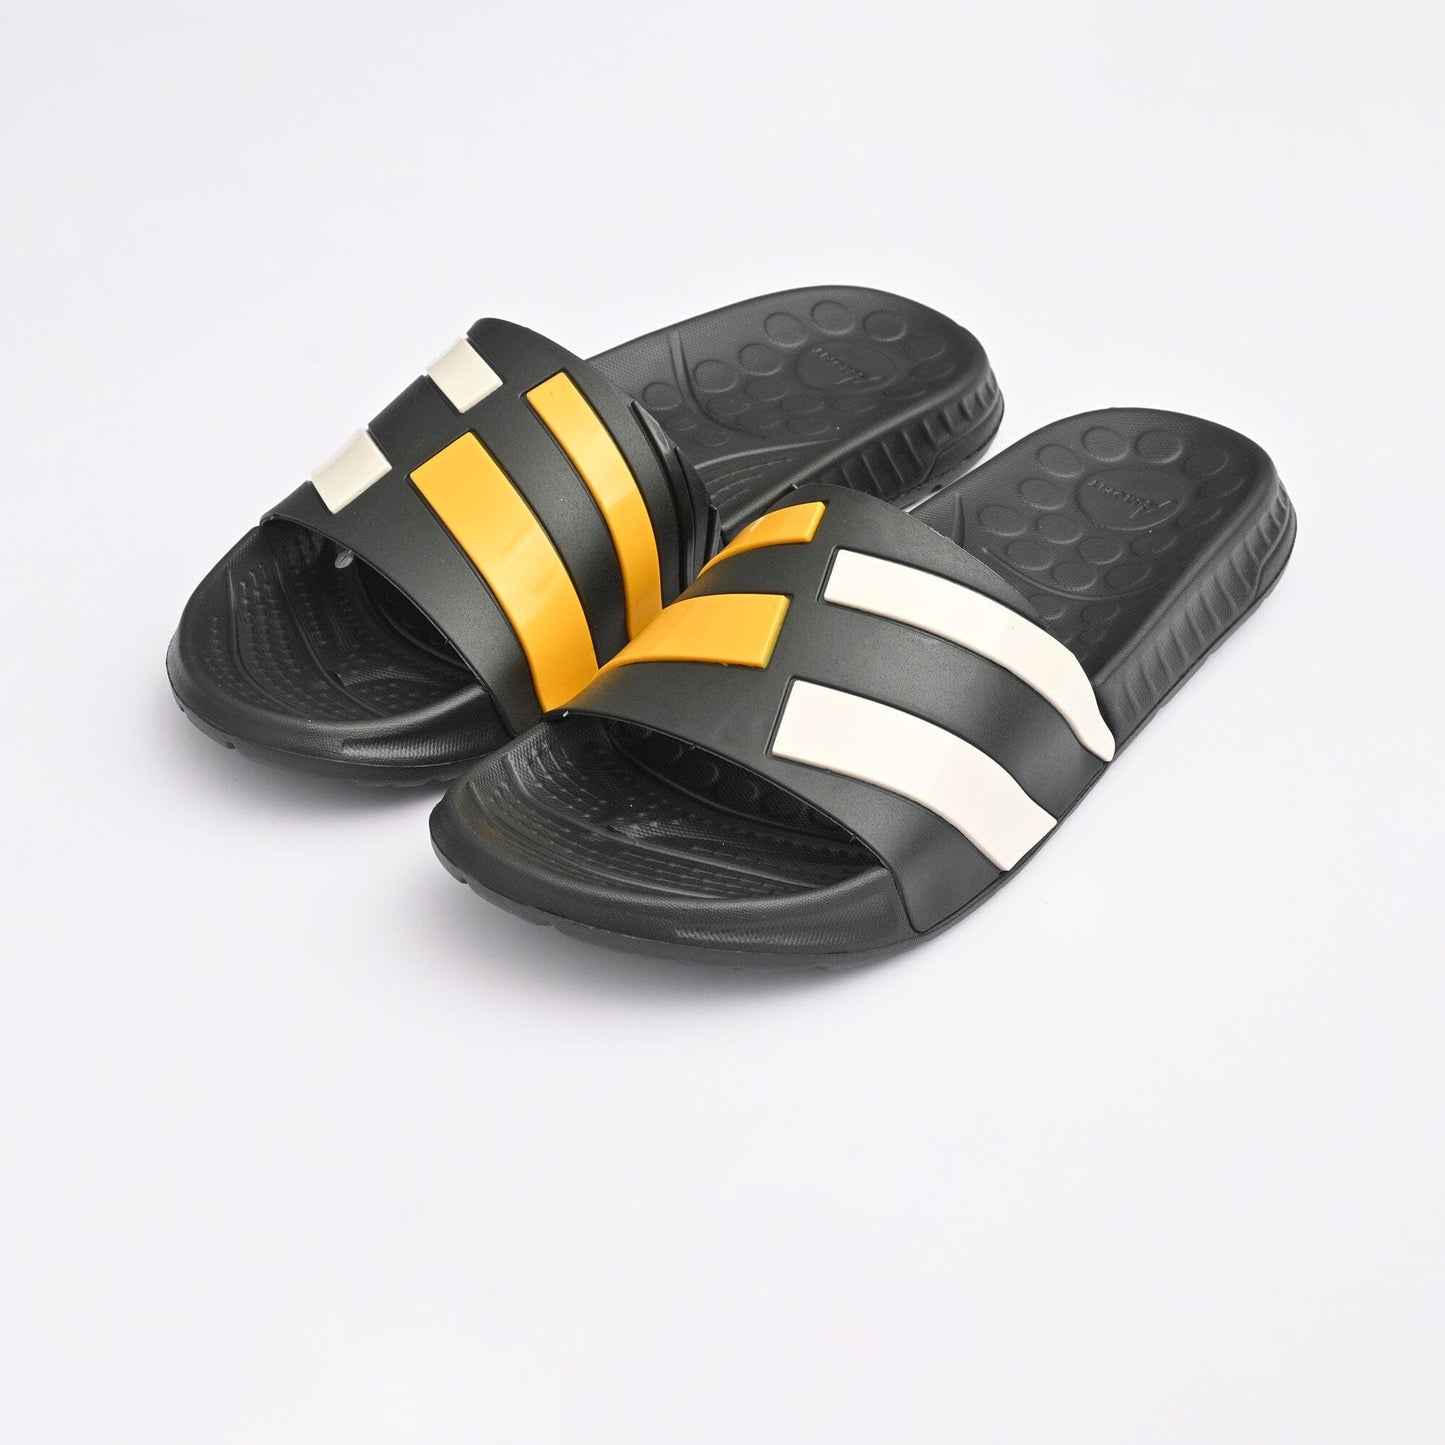 Aerofit Men's Contrast Strips Style Comfort Slides Men's Shoes NB Enterprises Black & Yellow EUR 39 